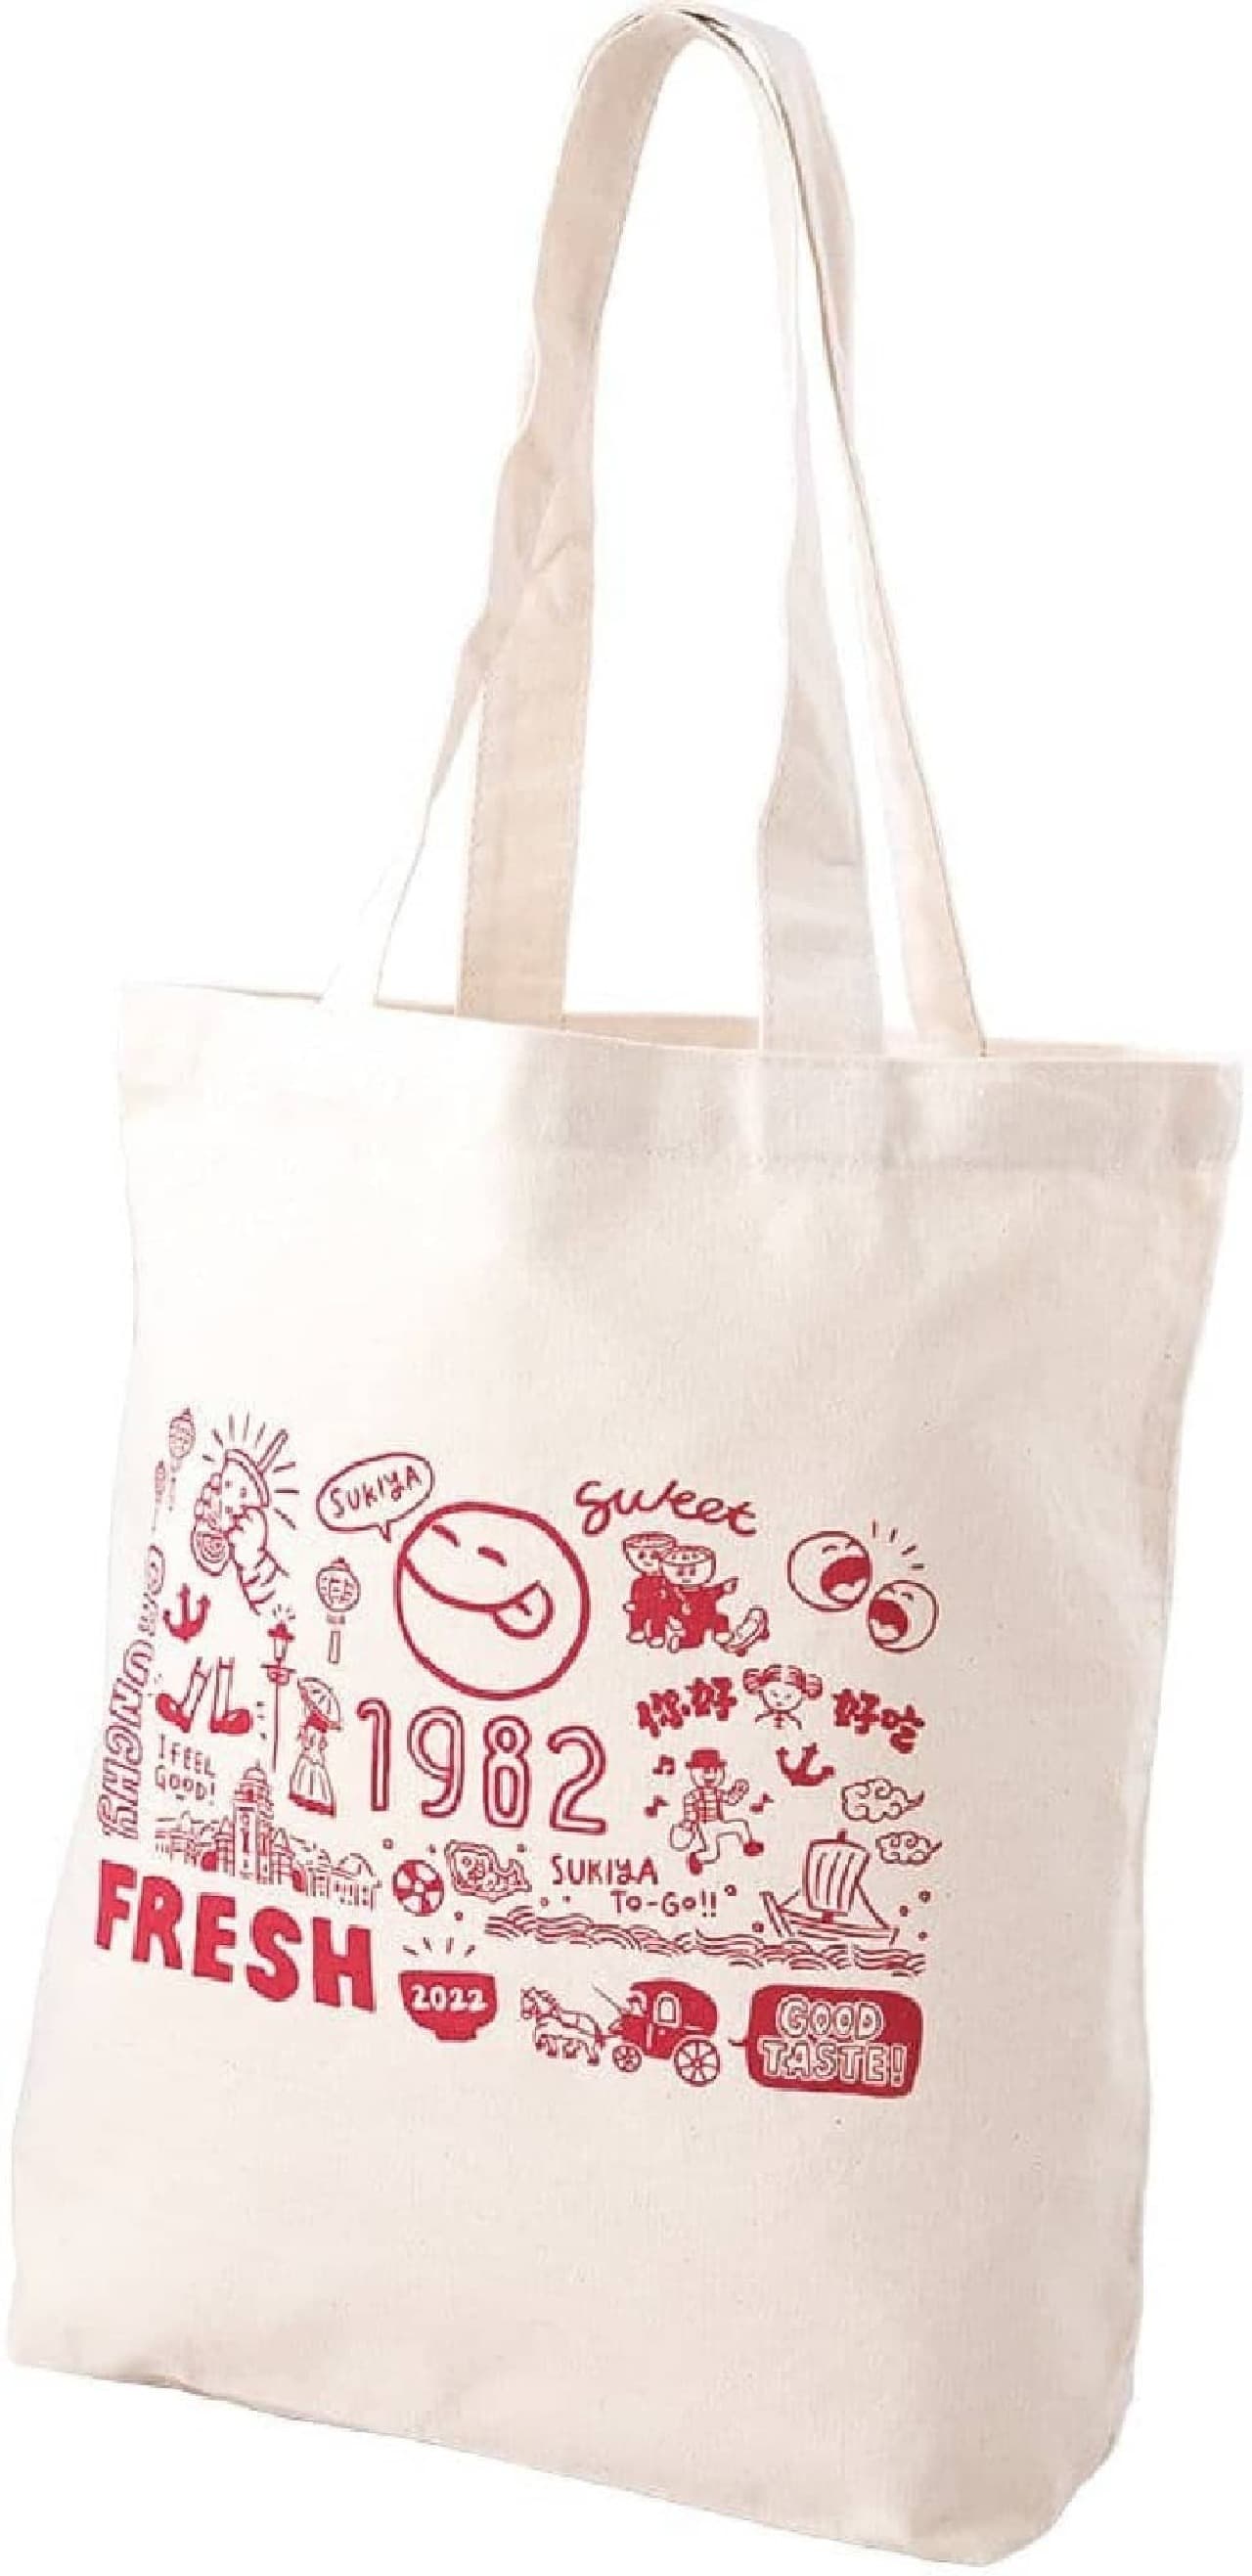 Sukiya lucky bag "SMILE BOX 2022"